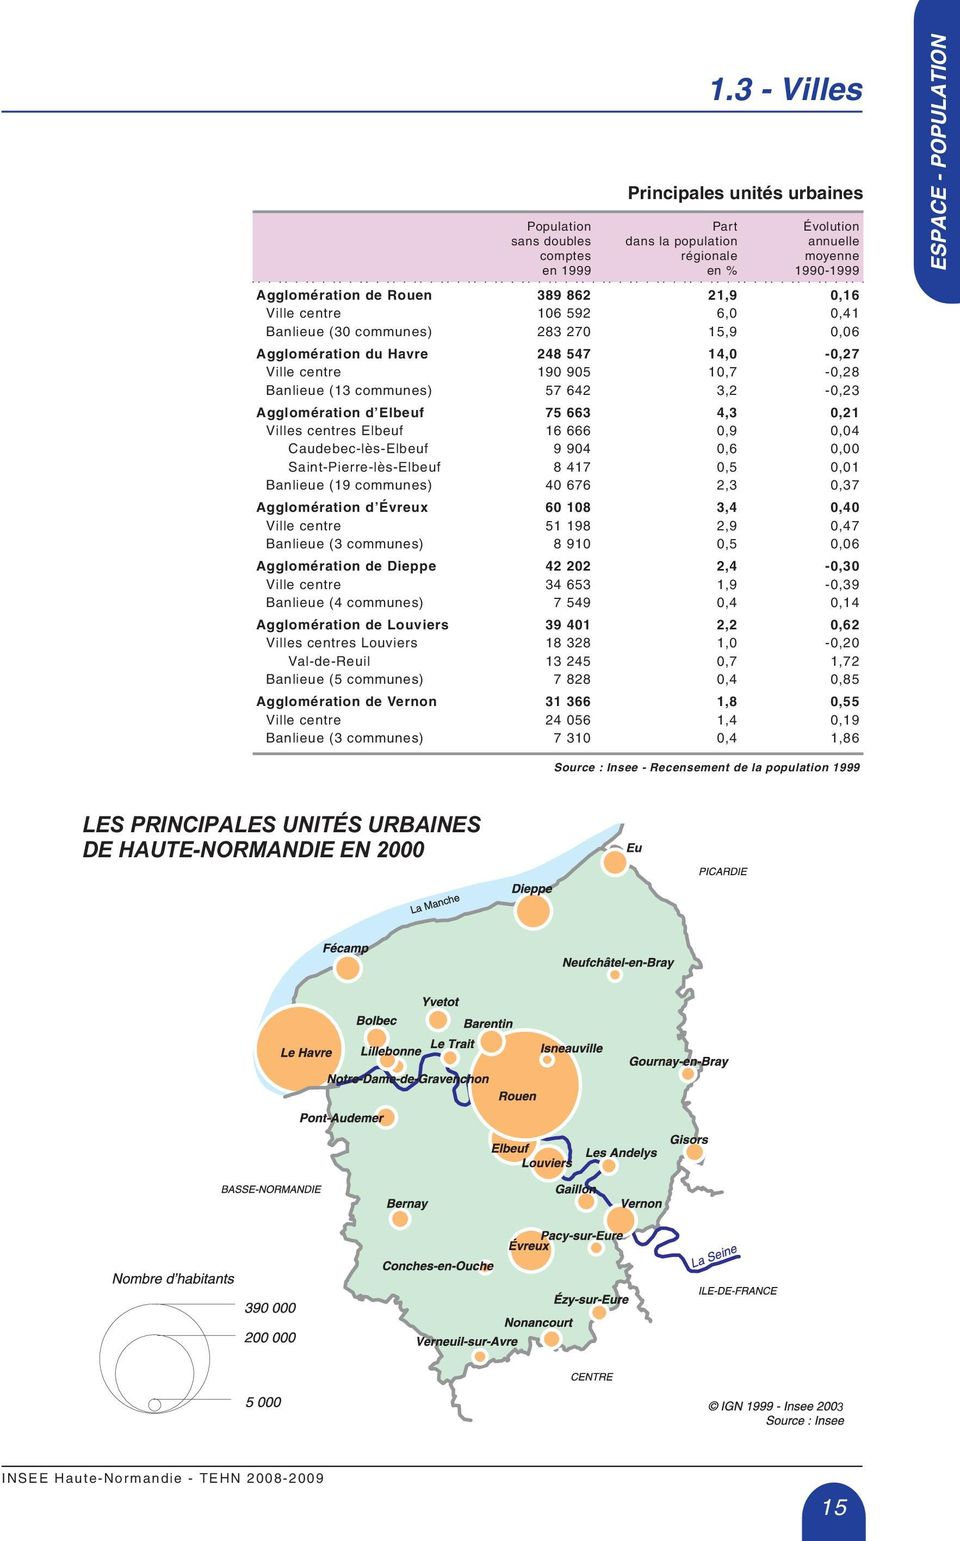 (13 communes Agglomération d Elbeuf Villes centres Elbeuf Caudebec-lès-Elbeuf Saint-Pierre-lès-Elbeuf Banlieue (19 communes Agglomération d Évreux Ville centre Banlieue (3 communes Agglomération de